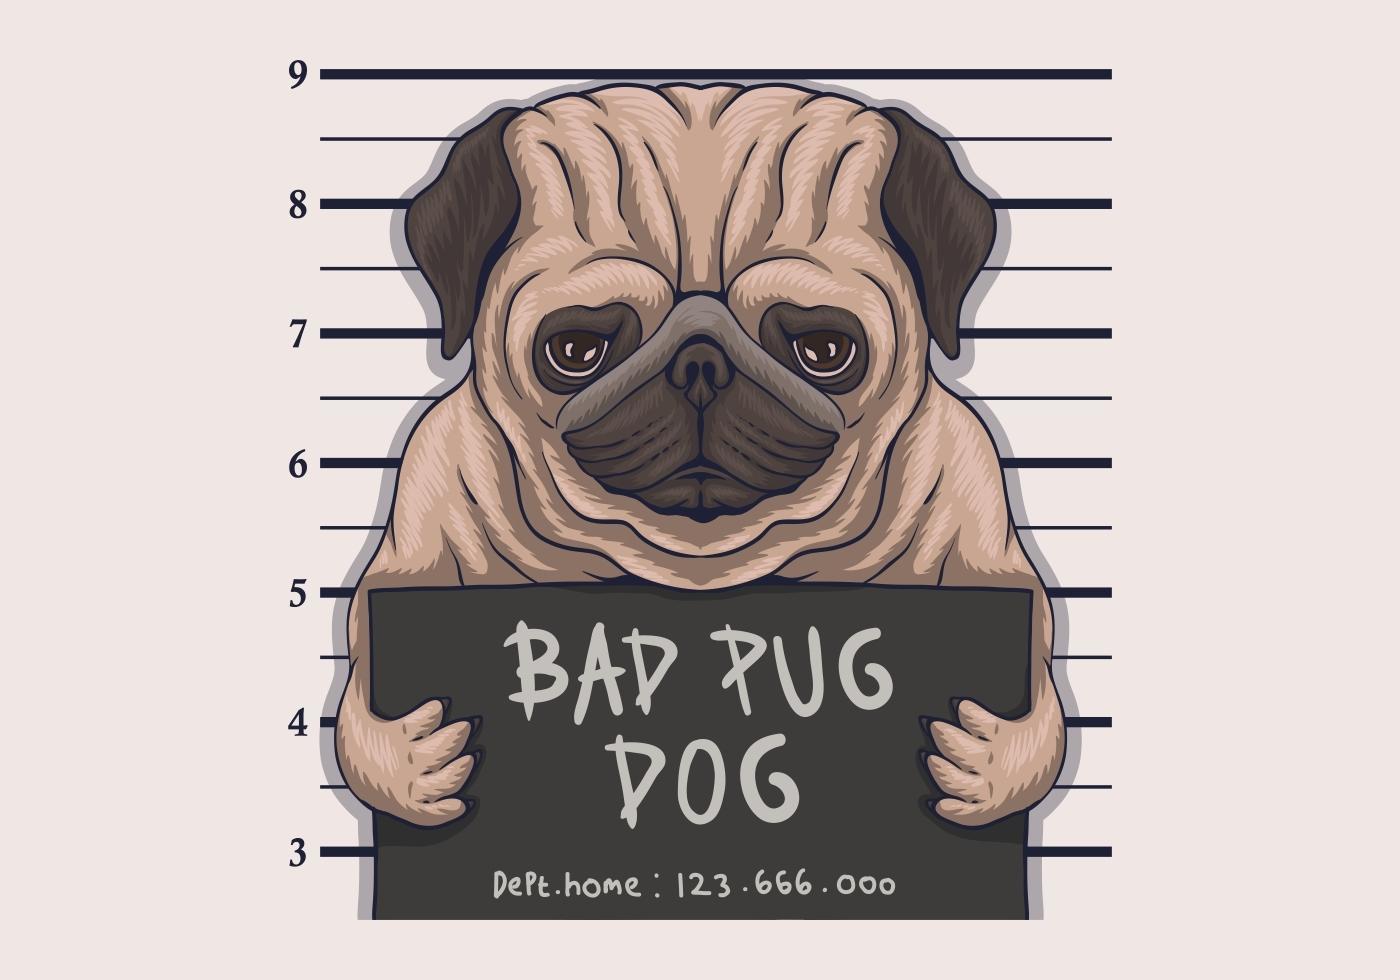 Bad pug dog crime vector illustration